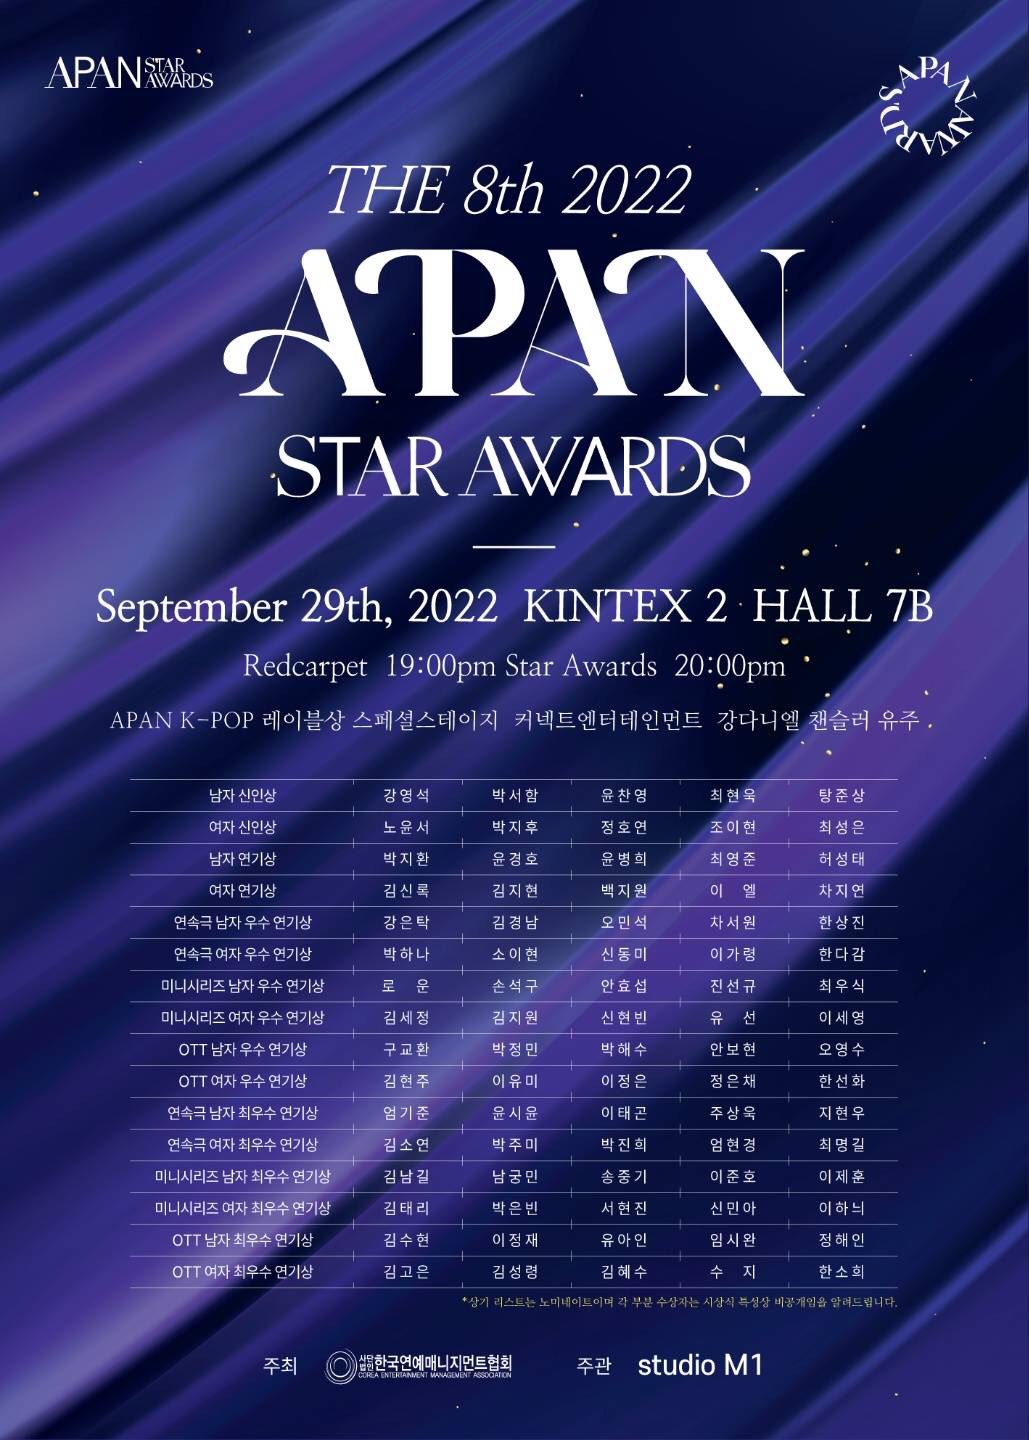 APAN STAR AWARDS 2022-2022年9月29日韓国ソウル| 韓国コンサート